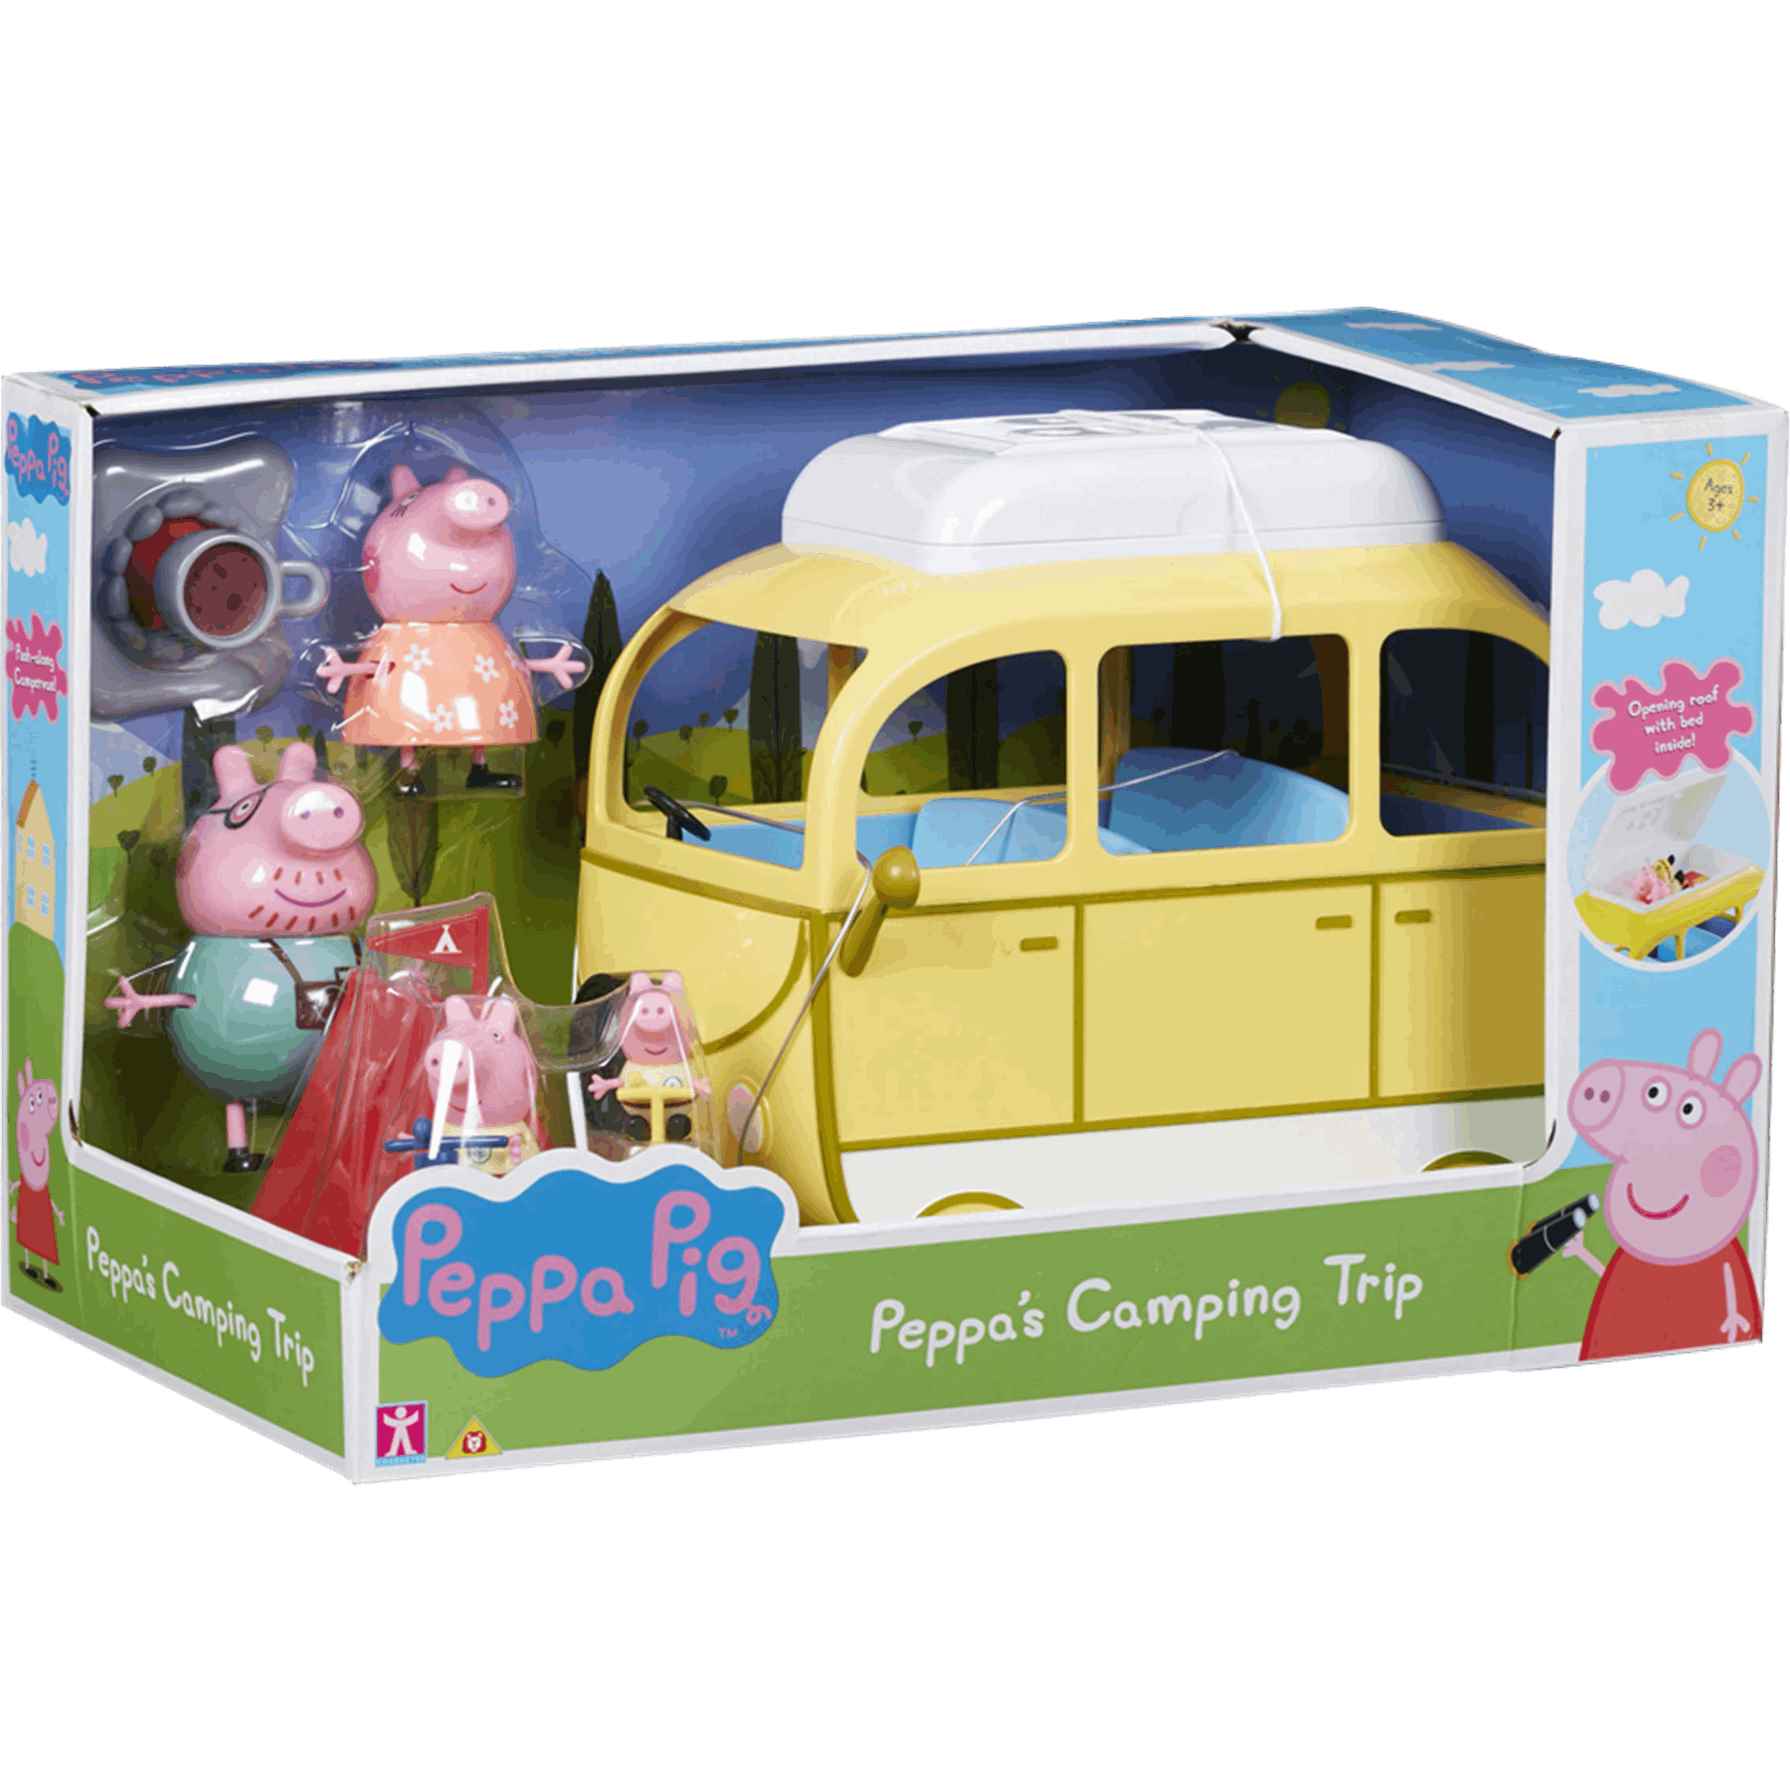 Ven a jugar a la Casita de juegos de Peppa Pig - El blog de Toy Planet